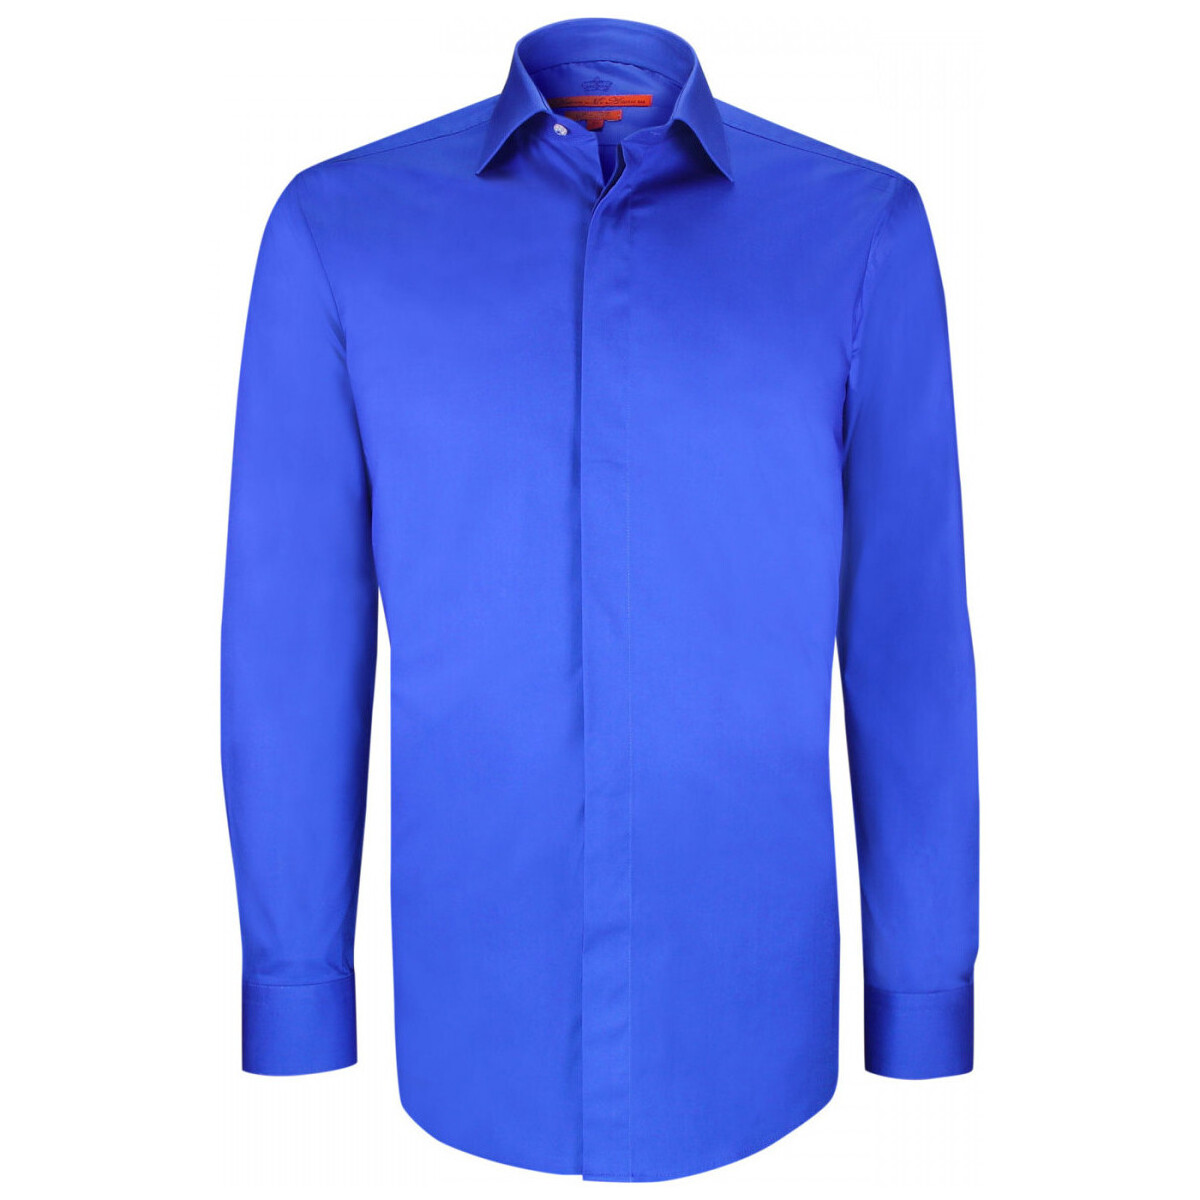 Vêtements Homme Chemises manches longues Andrew Mc Allister chemise gorge cachee mode ryan bleu Bleu